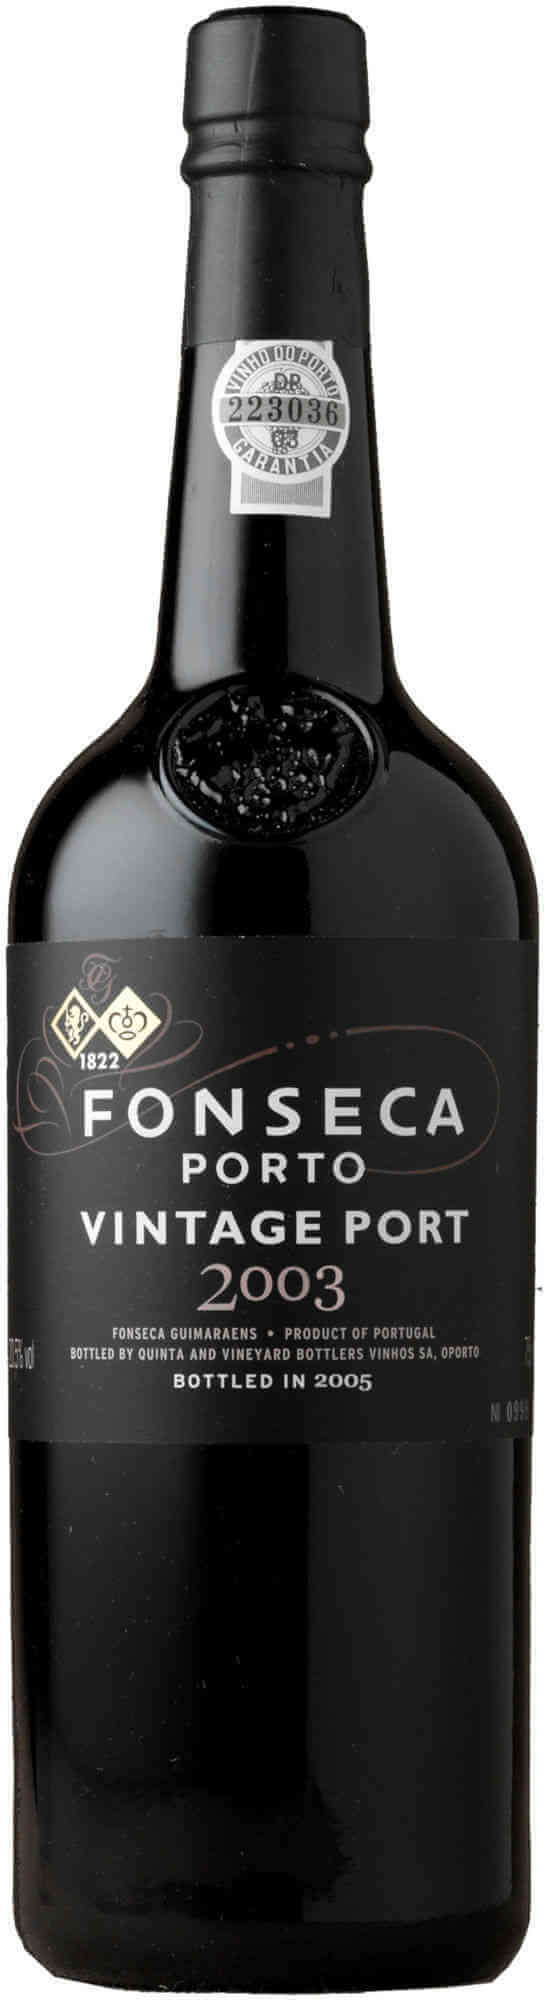 Fonseca-Vintage-Port-2003